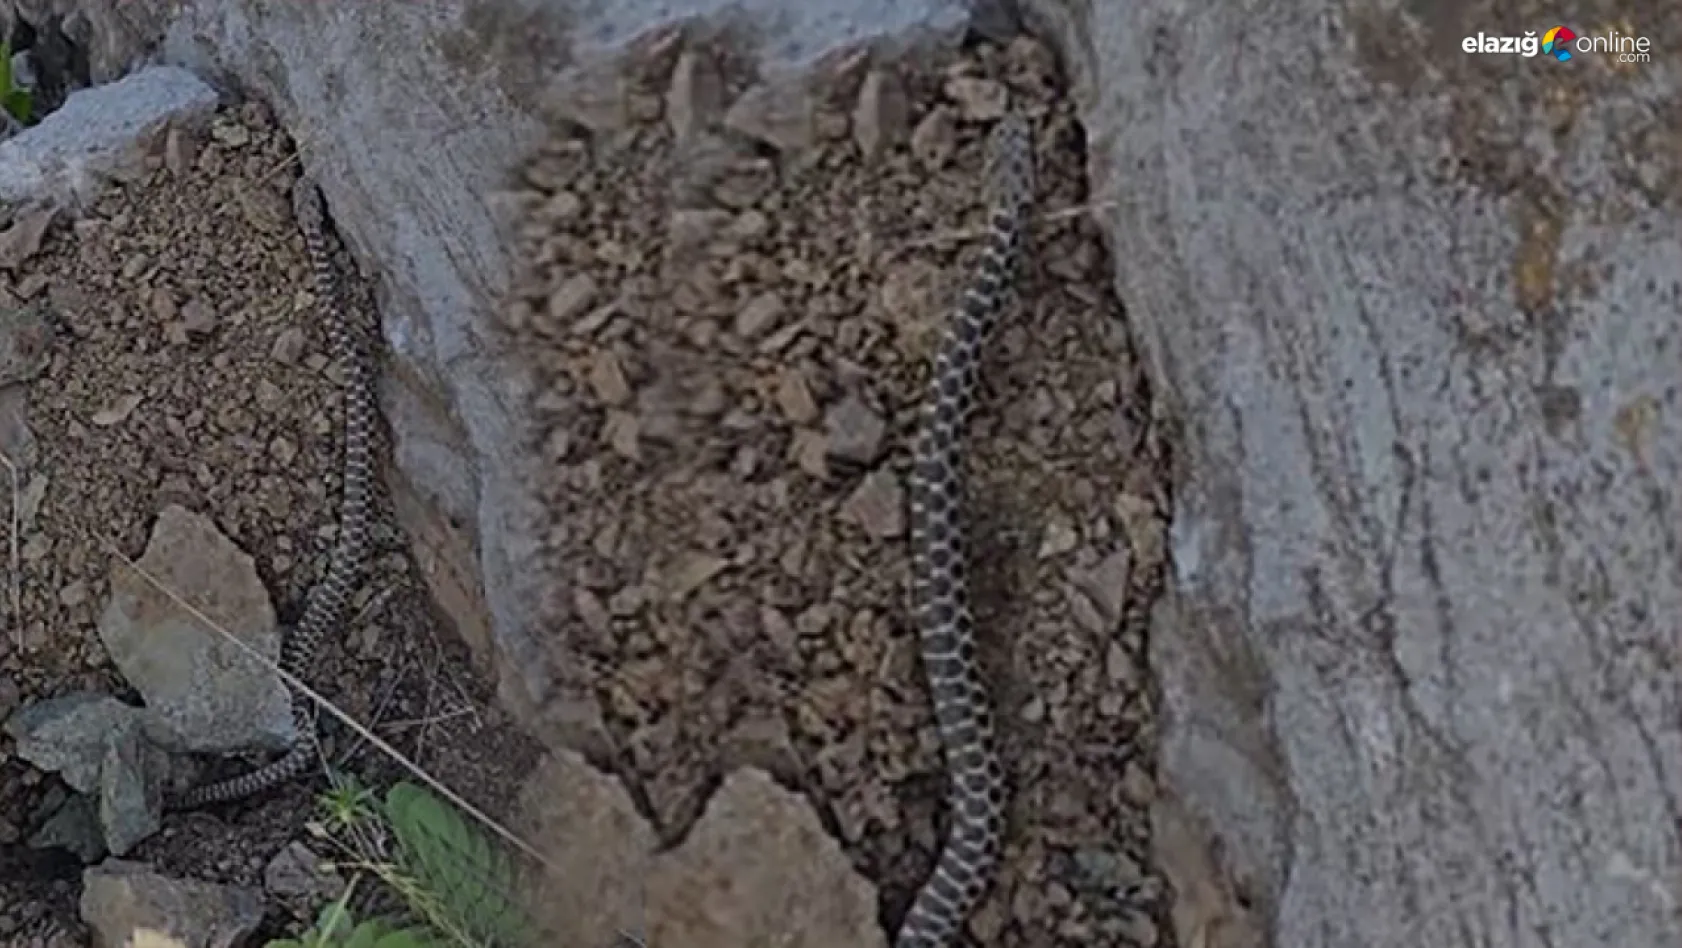 Zehirli 'Kocabaş Yılanı' Alacakaya'da görüntülendi